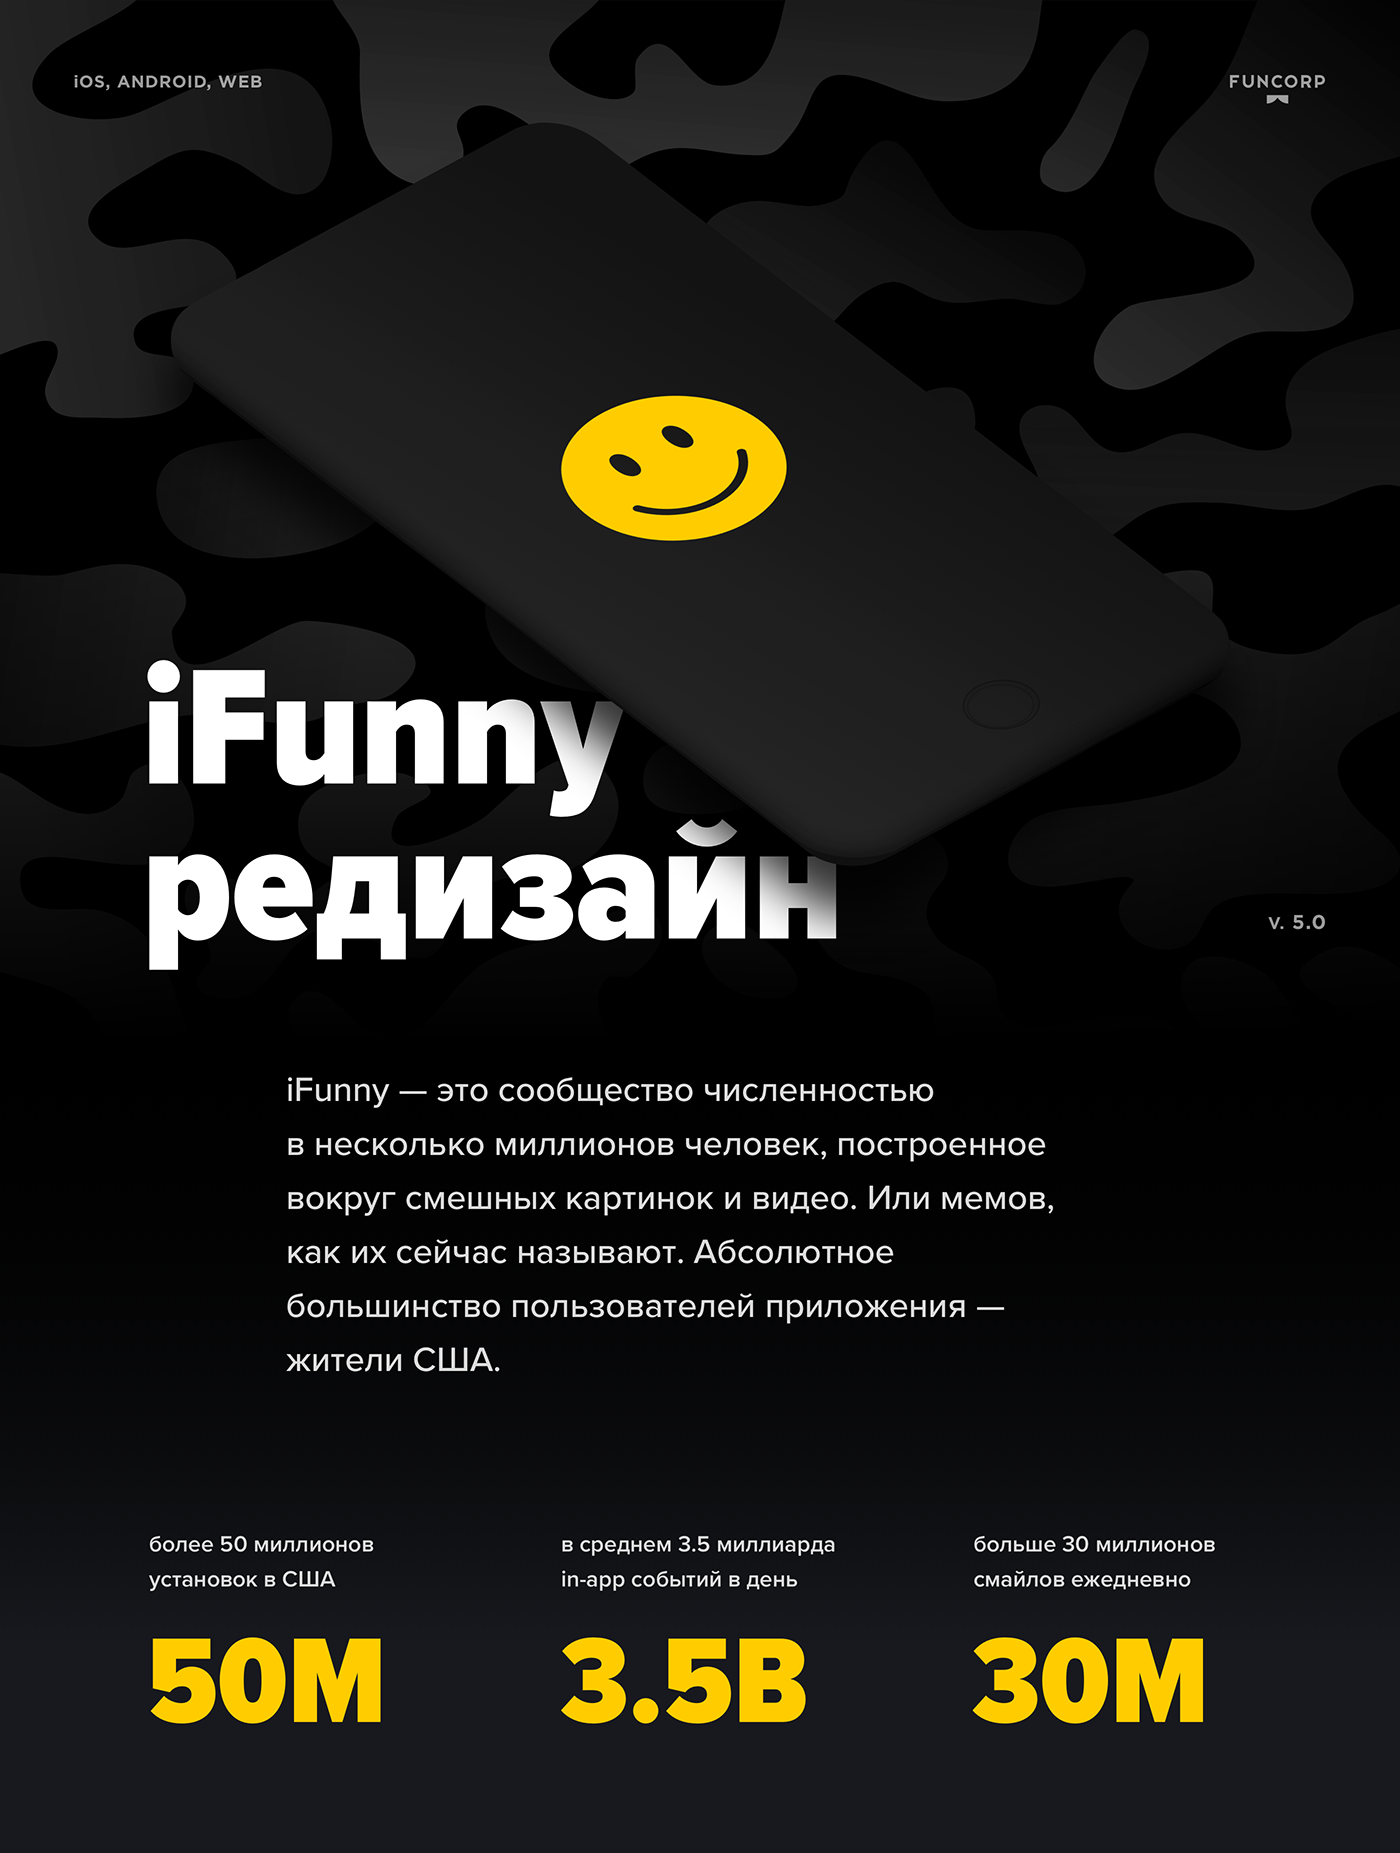 iFunny — это сообщество численностью
в несколько миллионов человек, построенное вокруг смешных